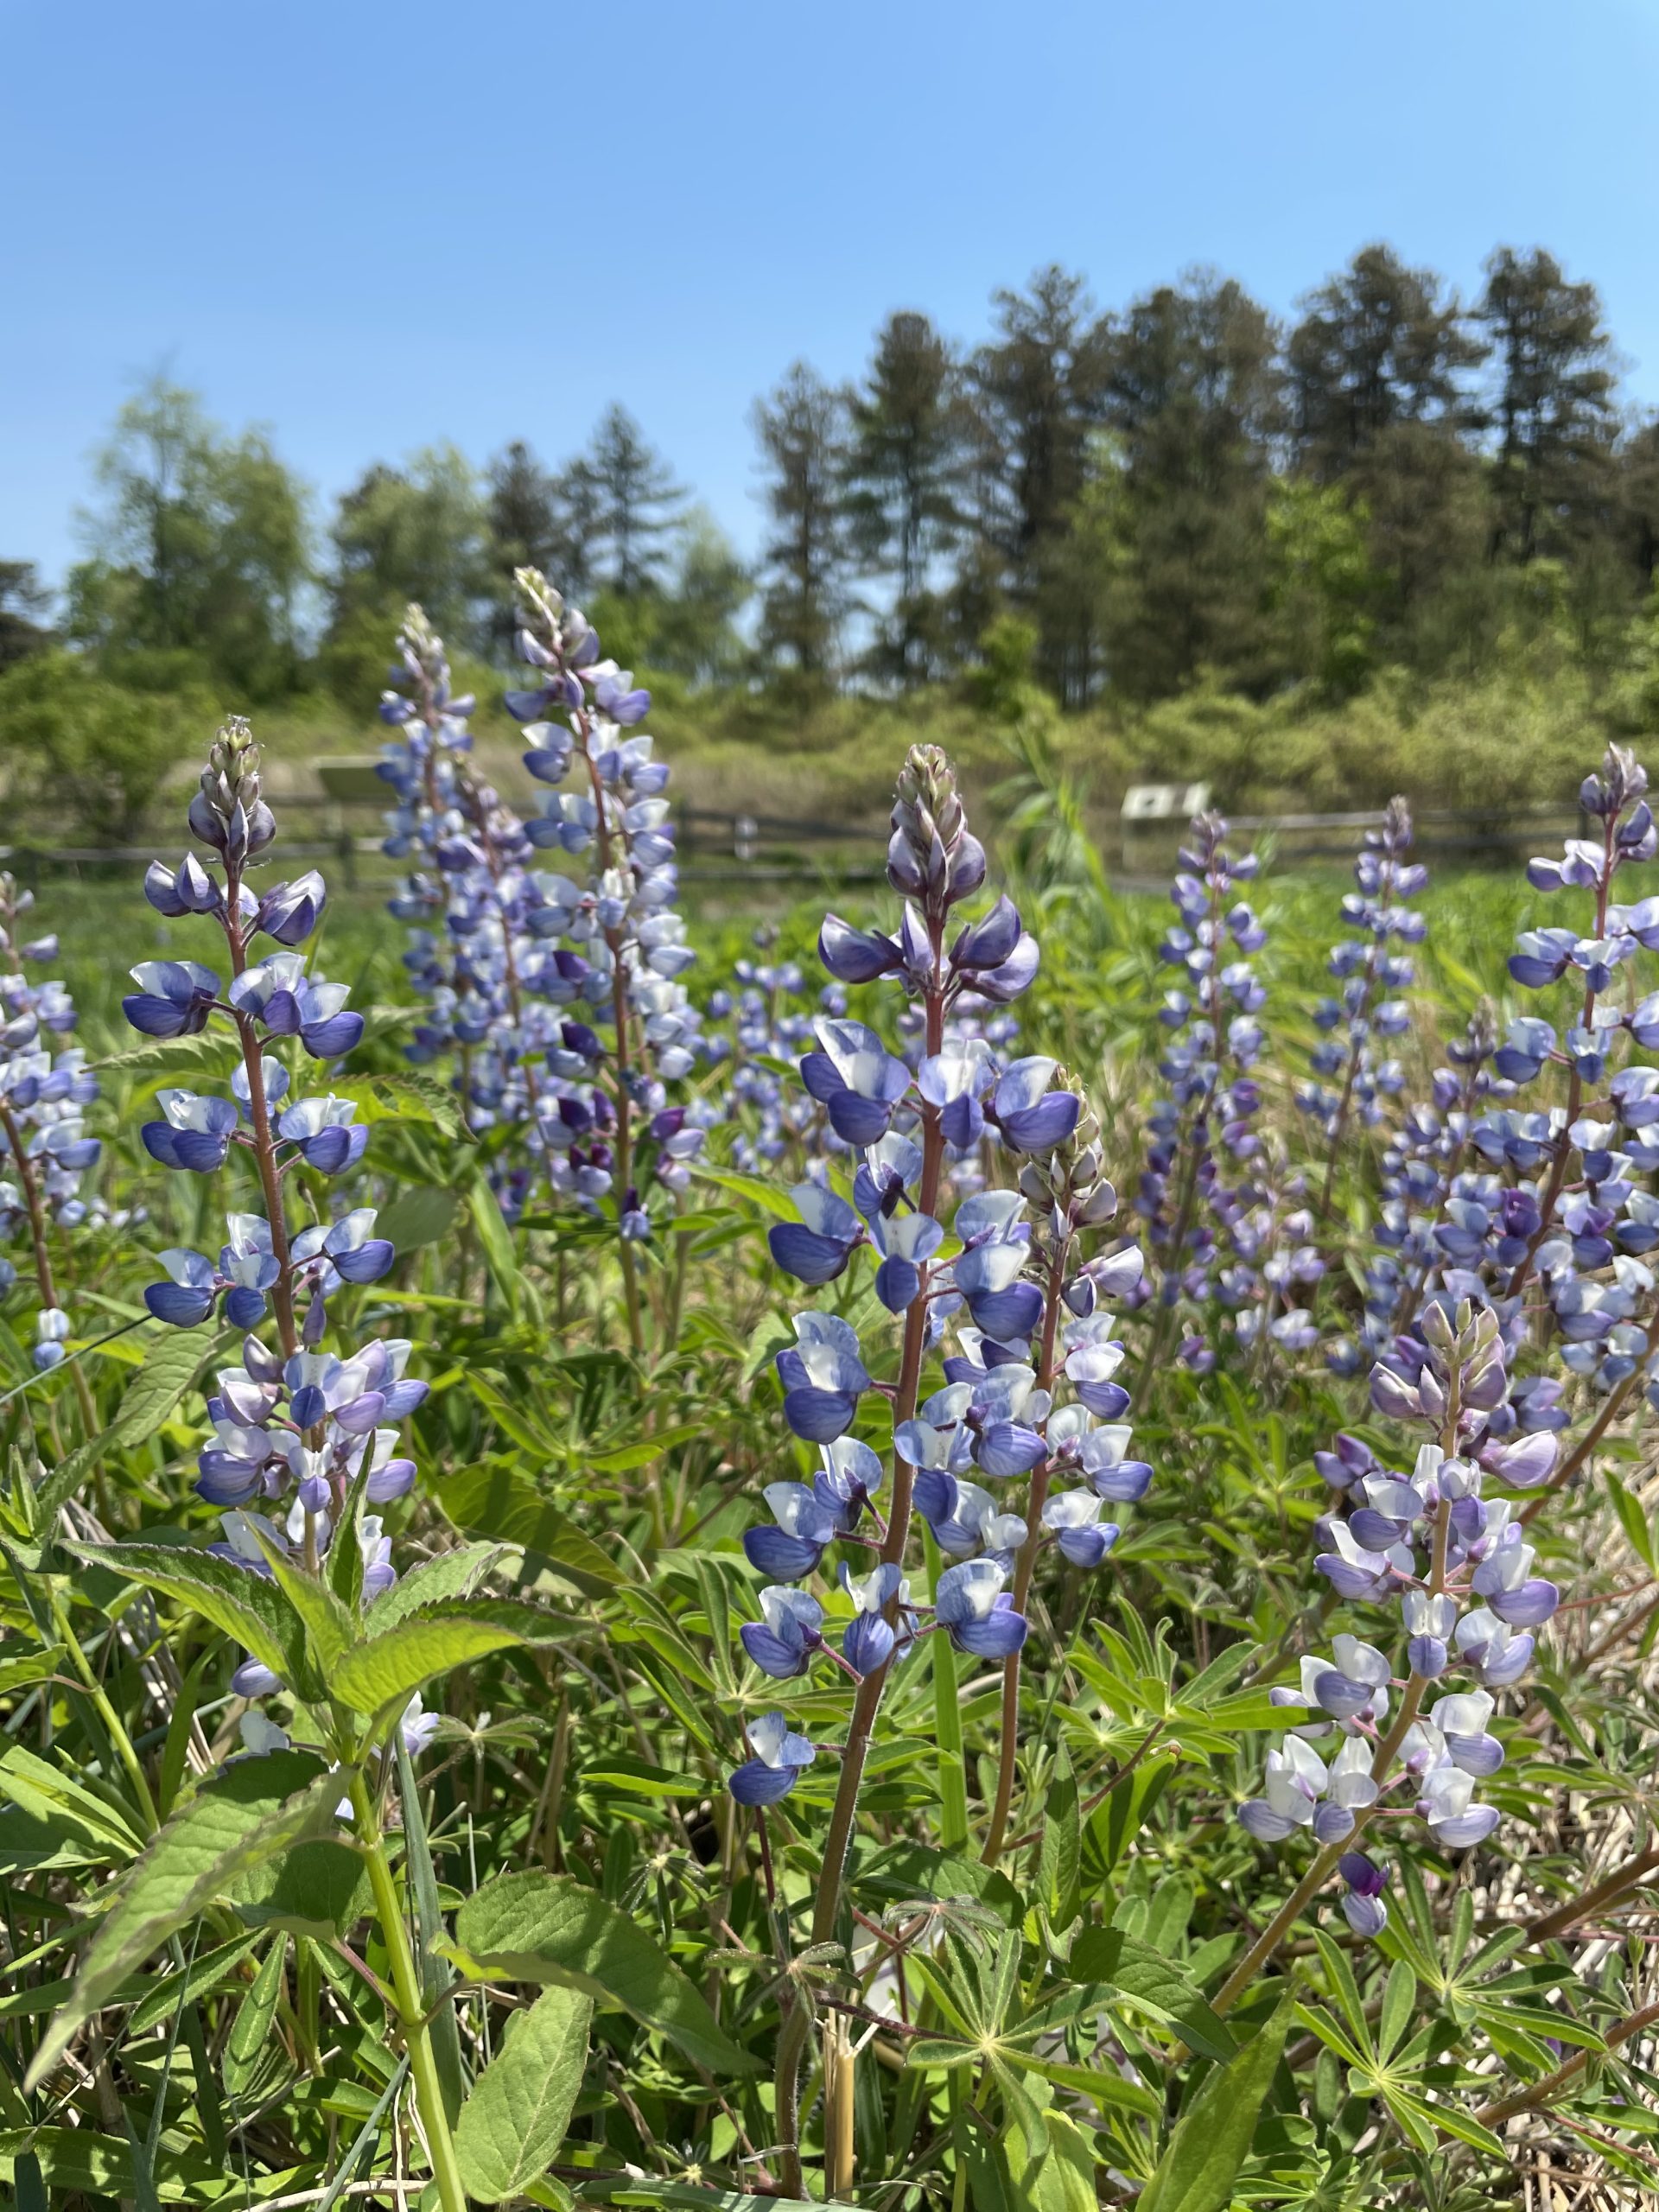 Blue lupine flowers in a field